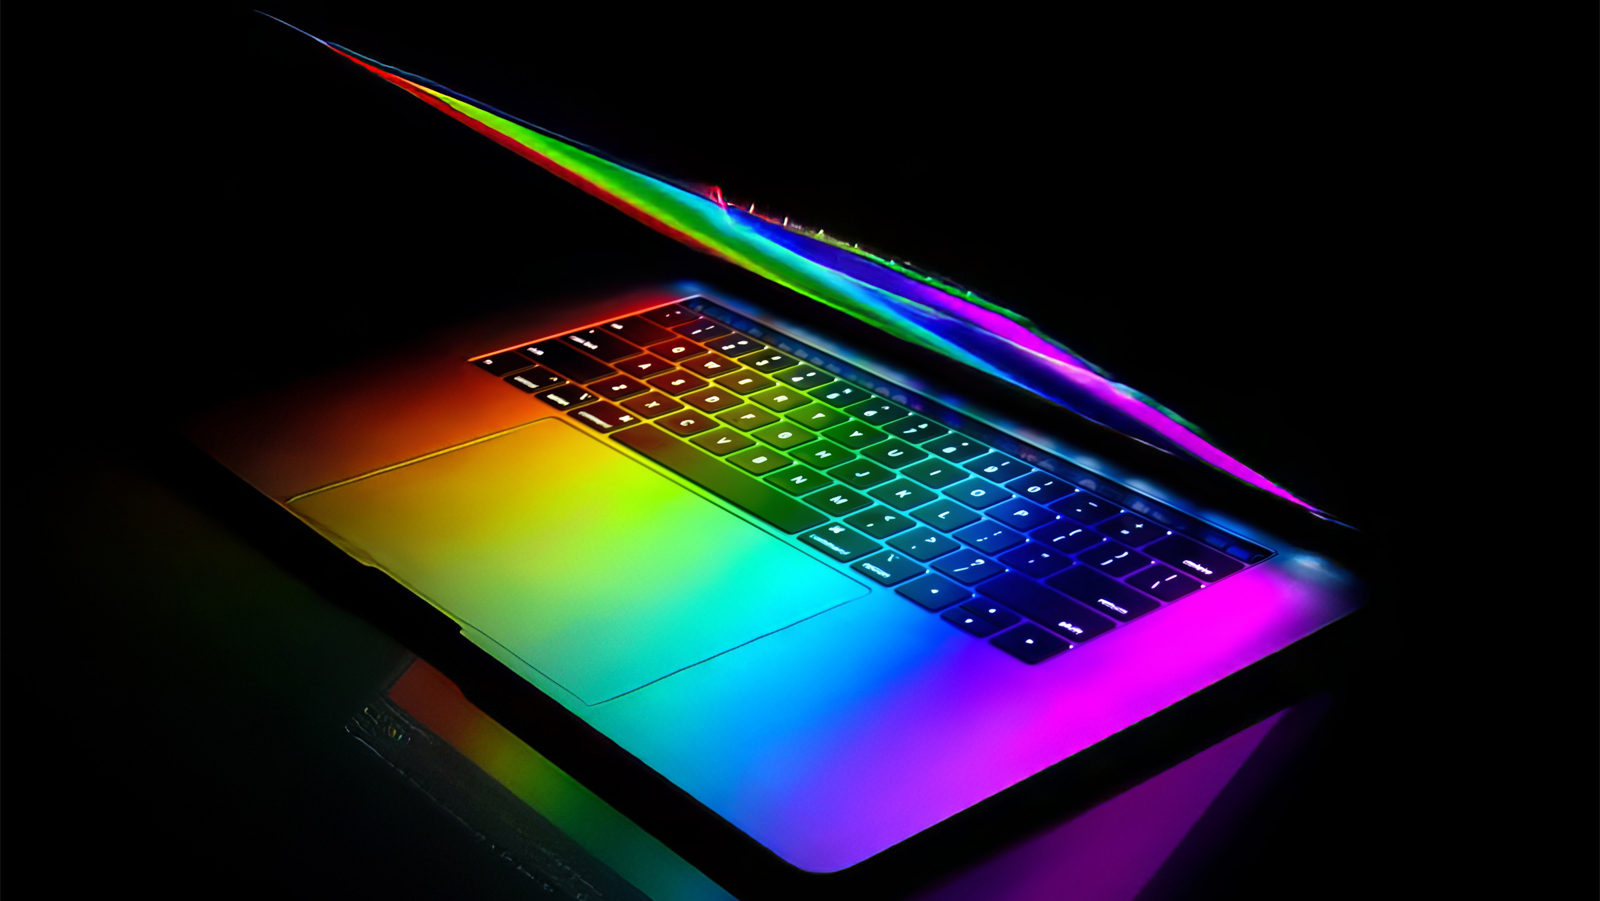 Cân màu màn hình máy tính: Tầm quan trọng và lợi ích của việc cân chỉnh màu